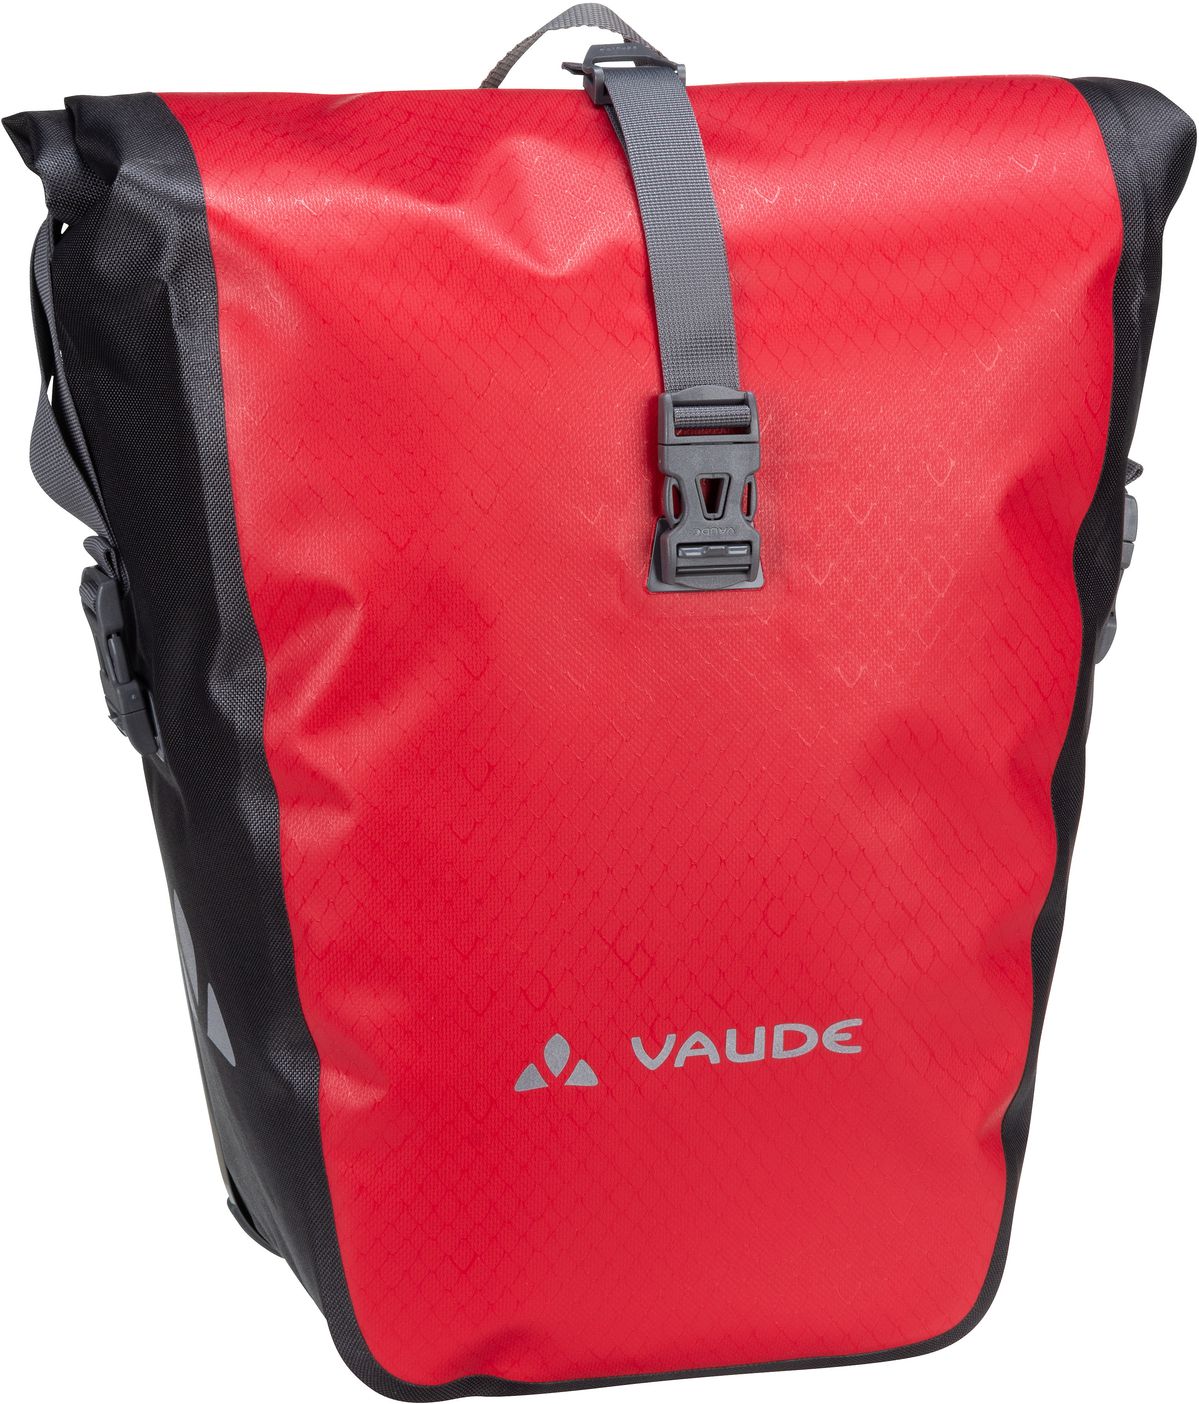 Vaude Aqua Back Single  in Rot (24 Liter), Fahrradtasche